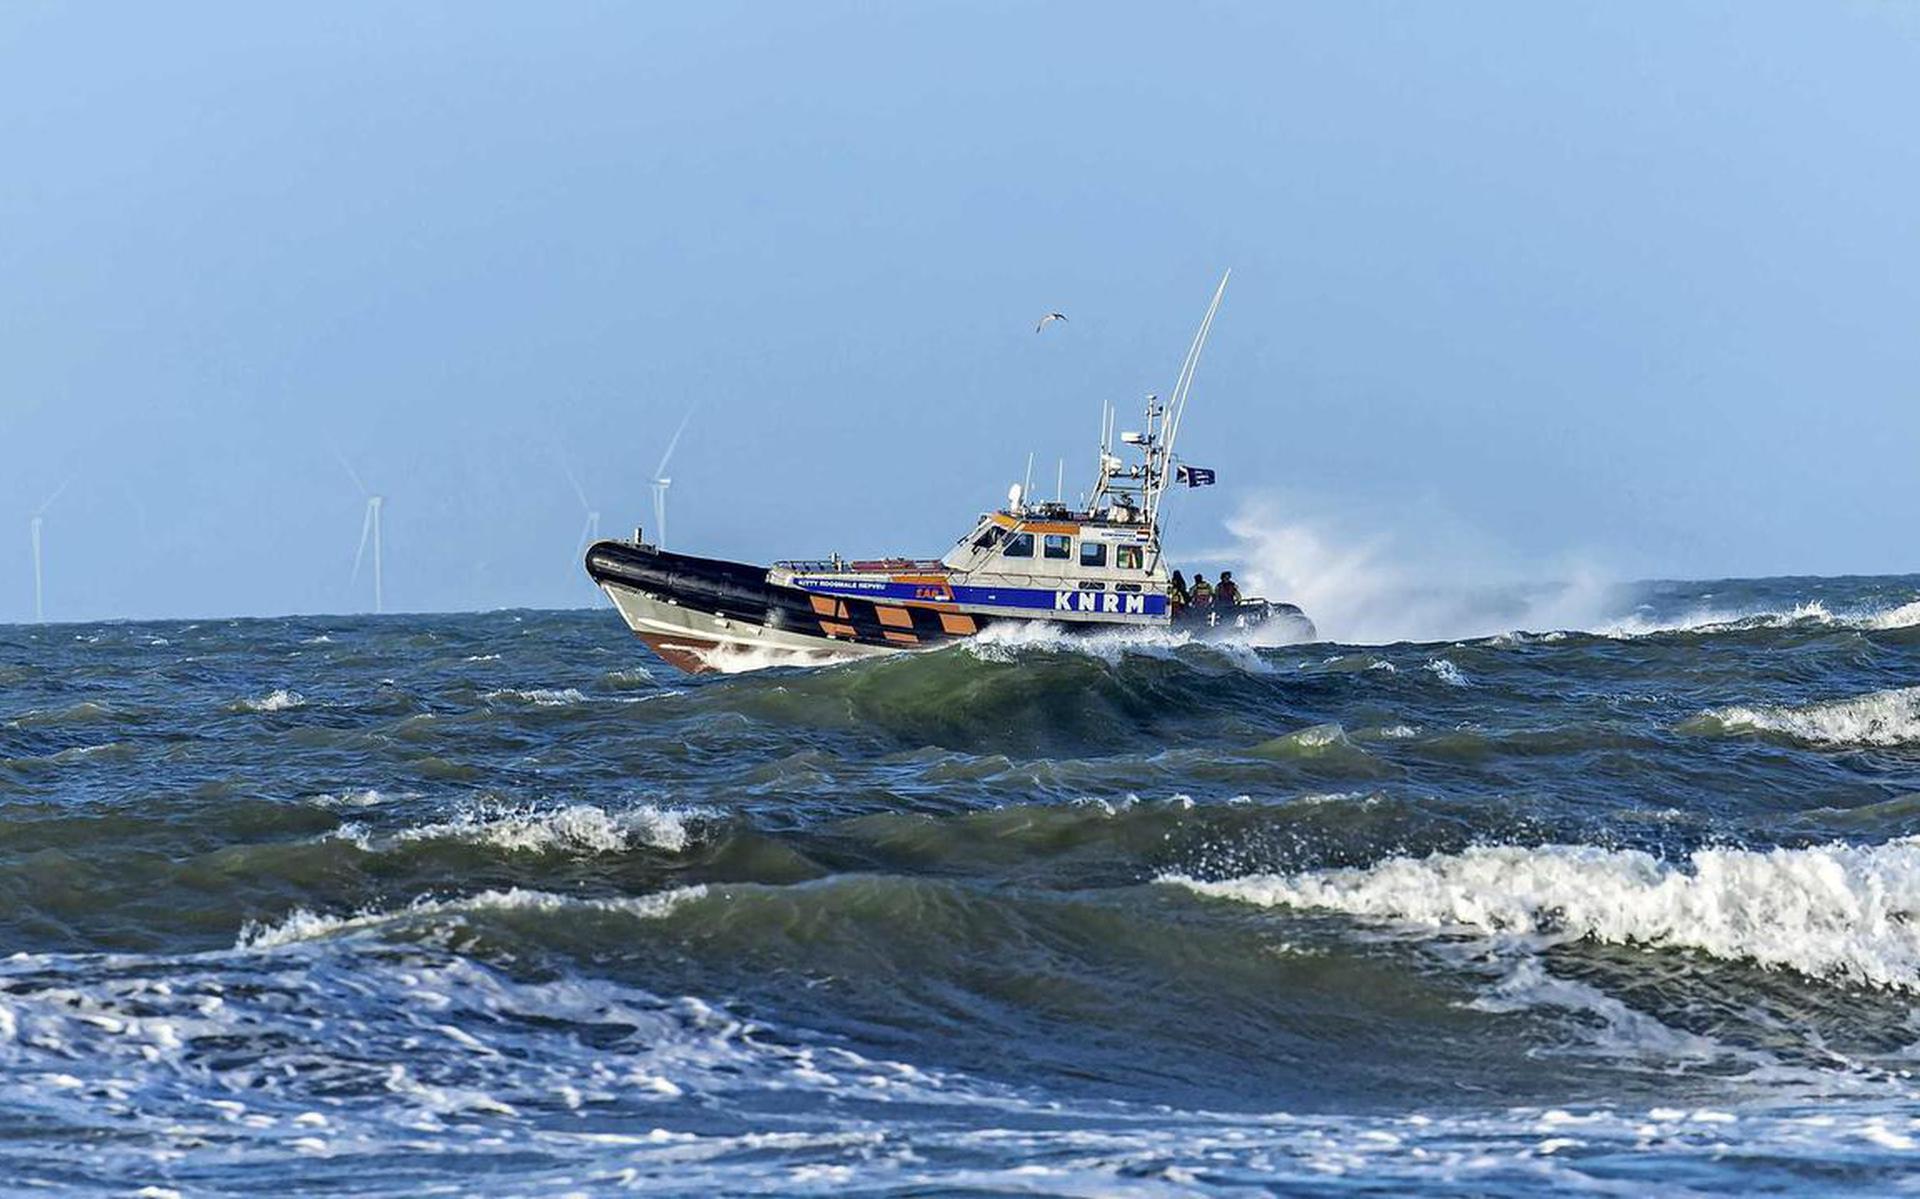 Aan het zoeken doen onder meer een zoek- en reddingsteam van de Koninklijke Nederlandse Redding Maatschappij en een helikopter van de Kustwacht mee.